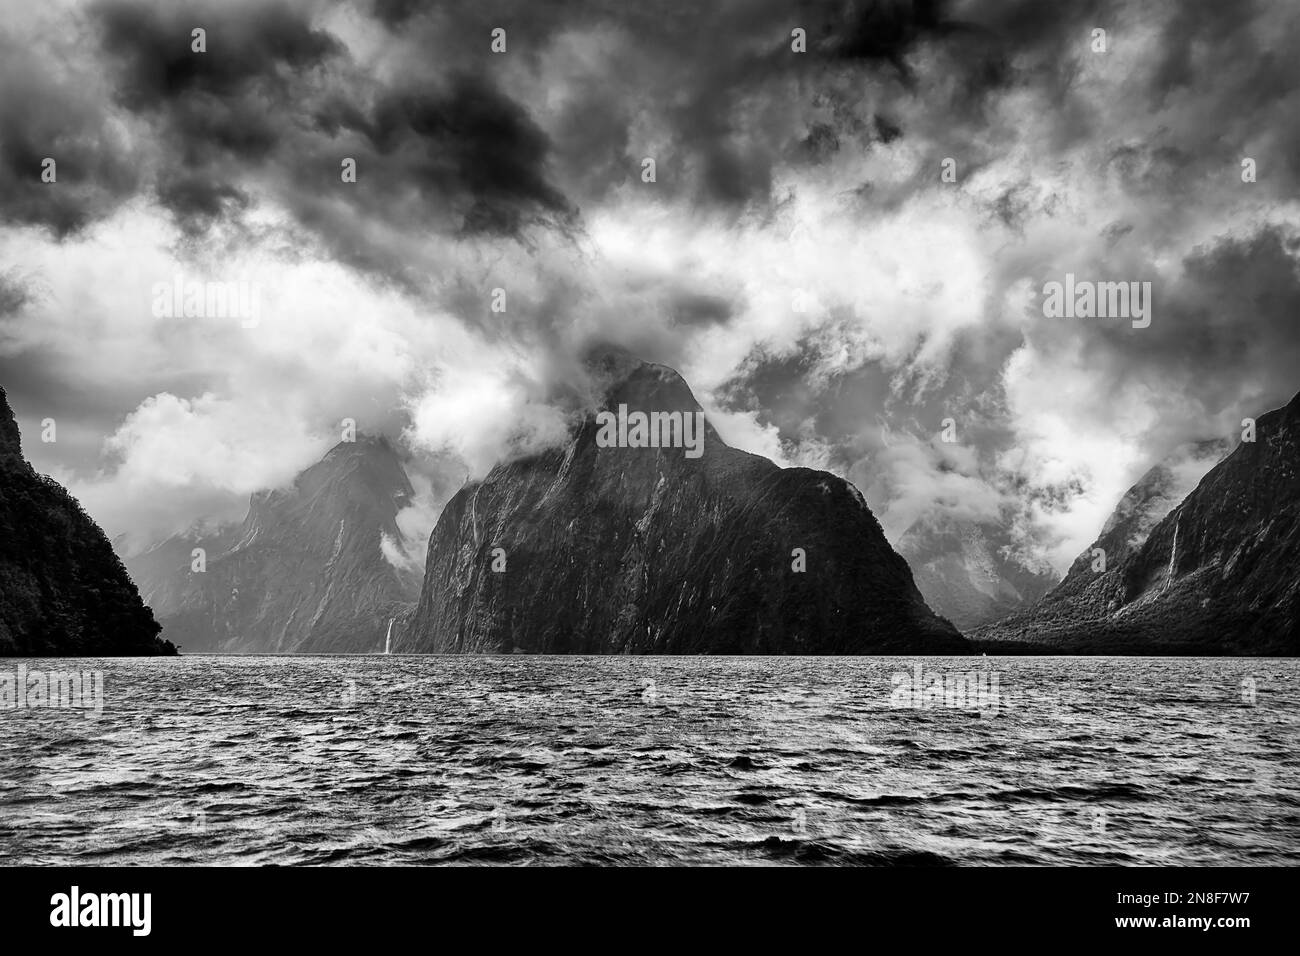 Il drammatico clima piovoso di BW Stormy a Milford Sound fiordland, Nuova Zelanda, intorno alle vette delle montagne. Foto Stock